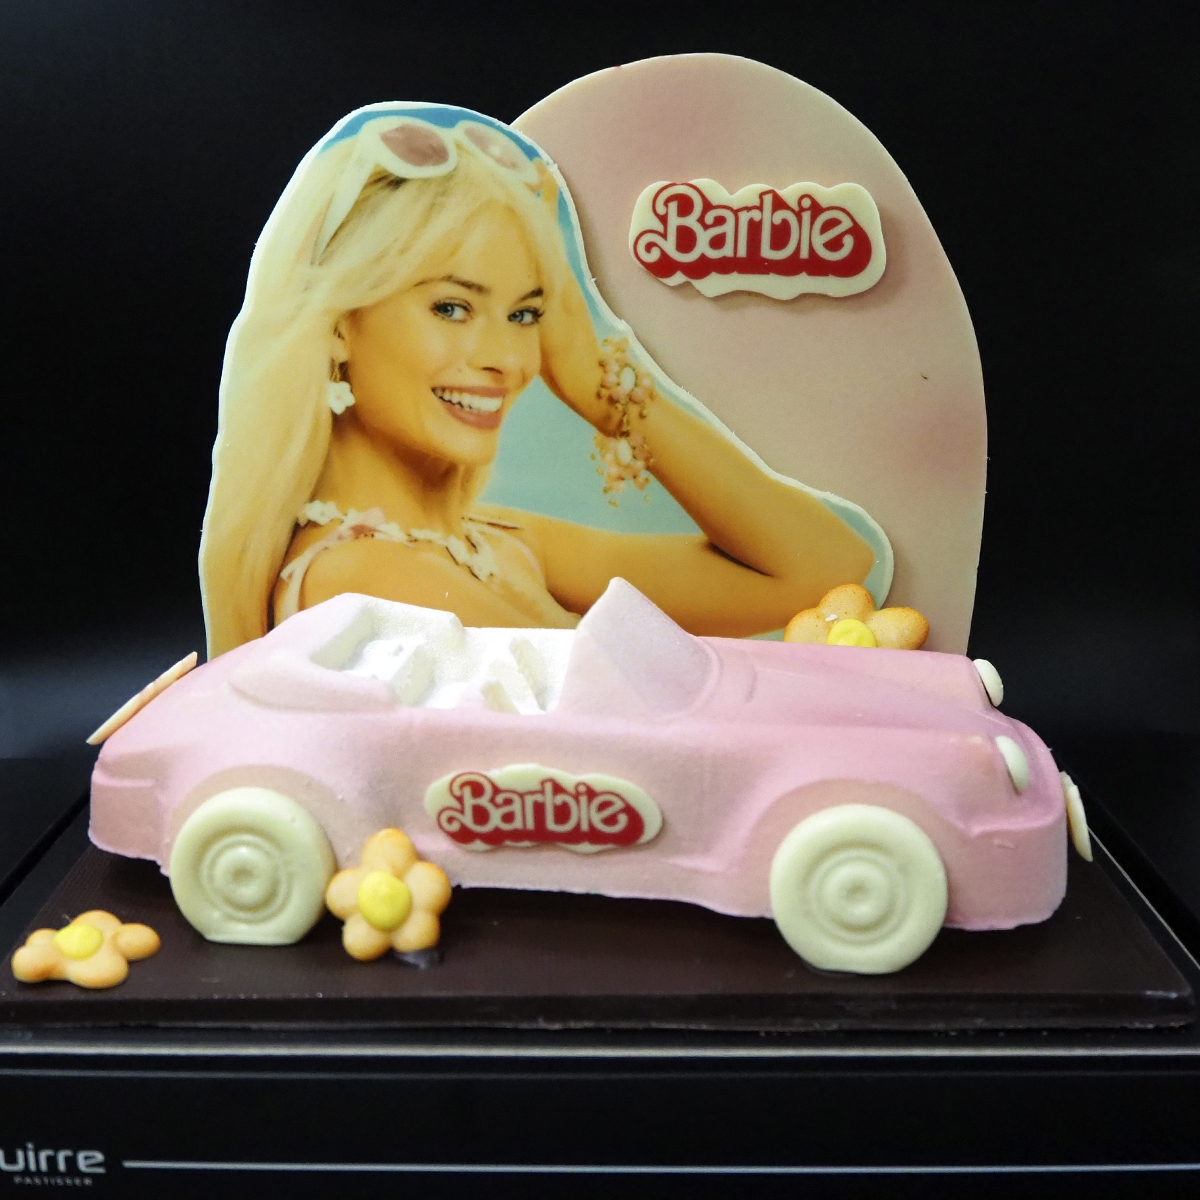 Mona de Pasqua artesanal elaborada per Zaguirre Pastisser amb la figura i cotxe de la Barbie